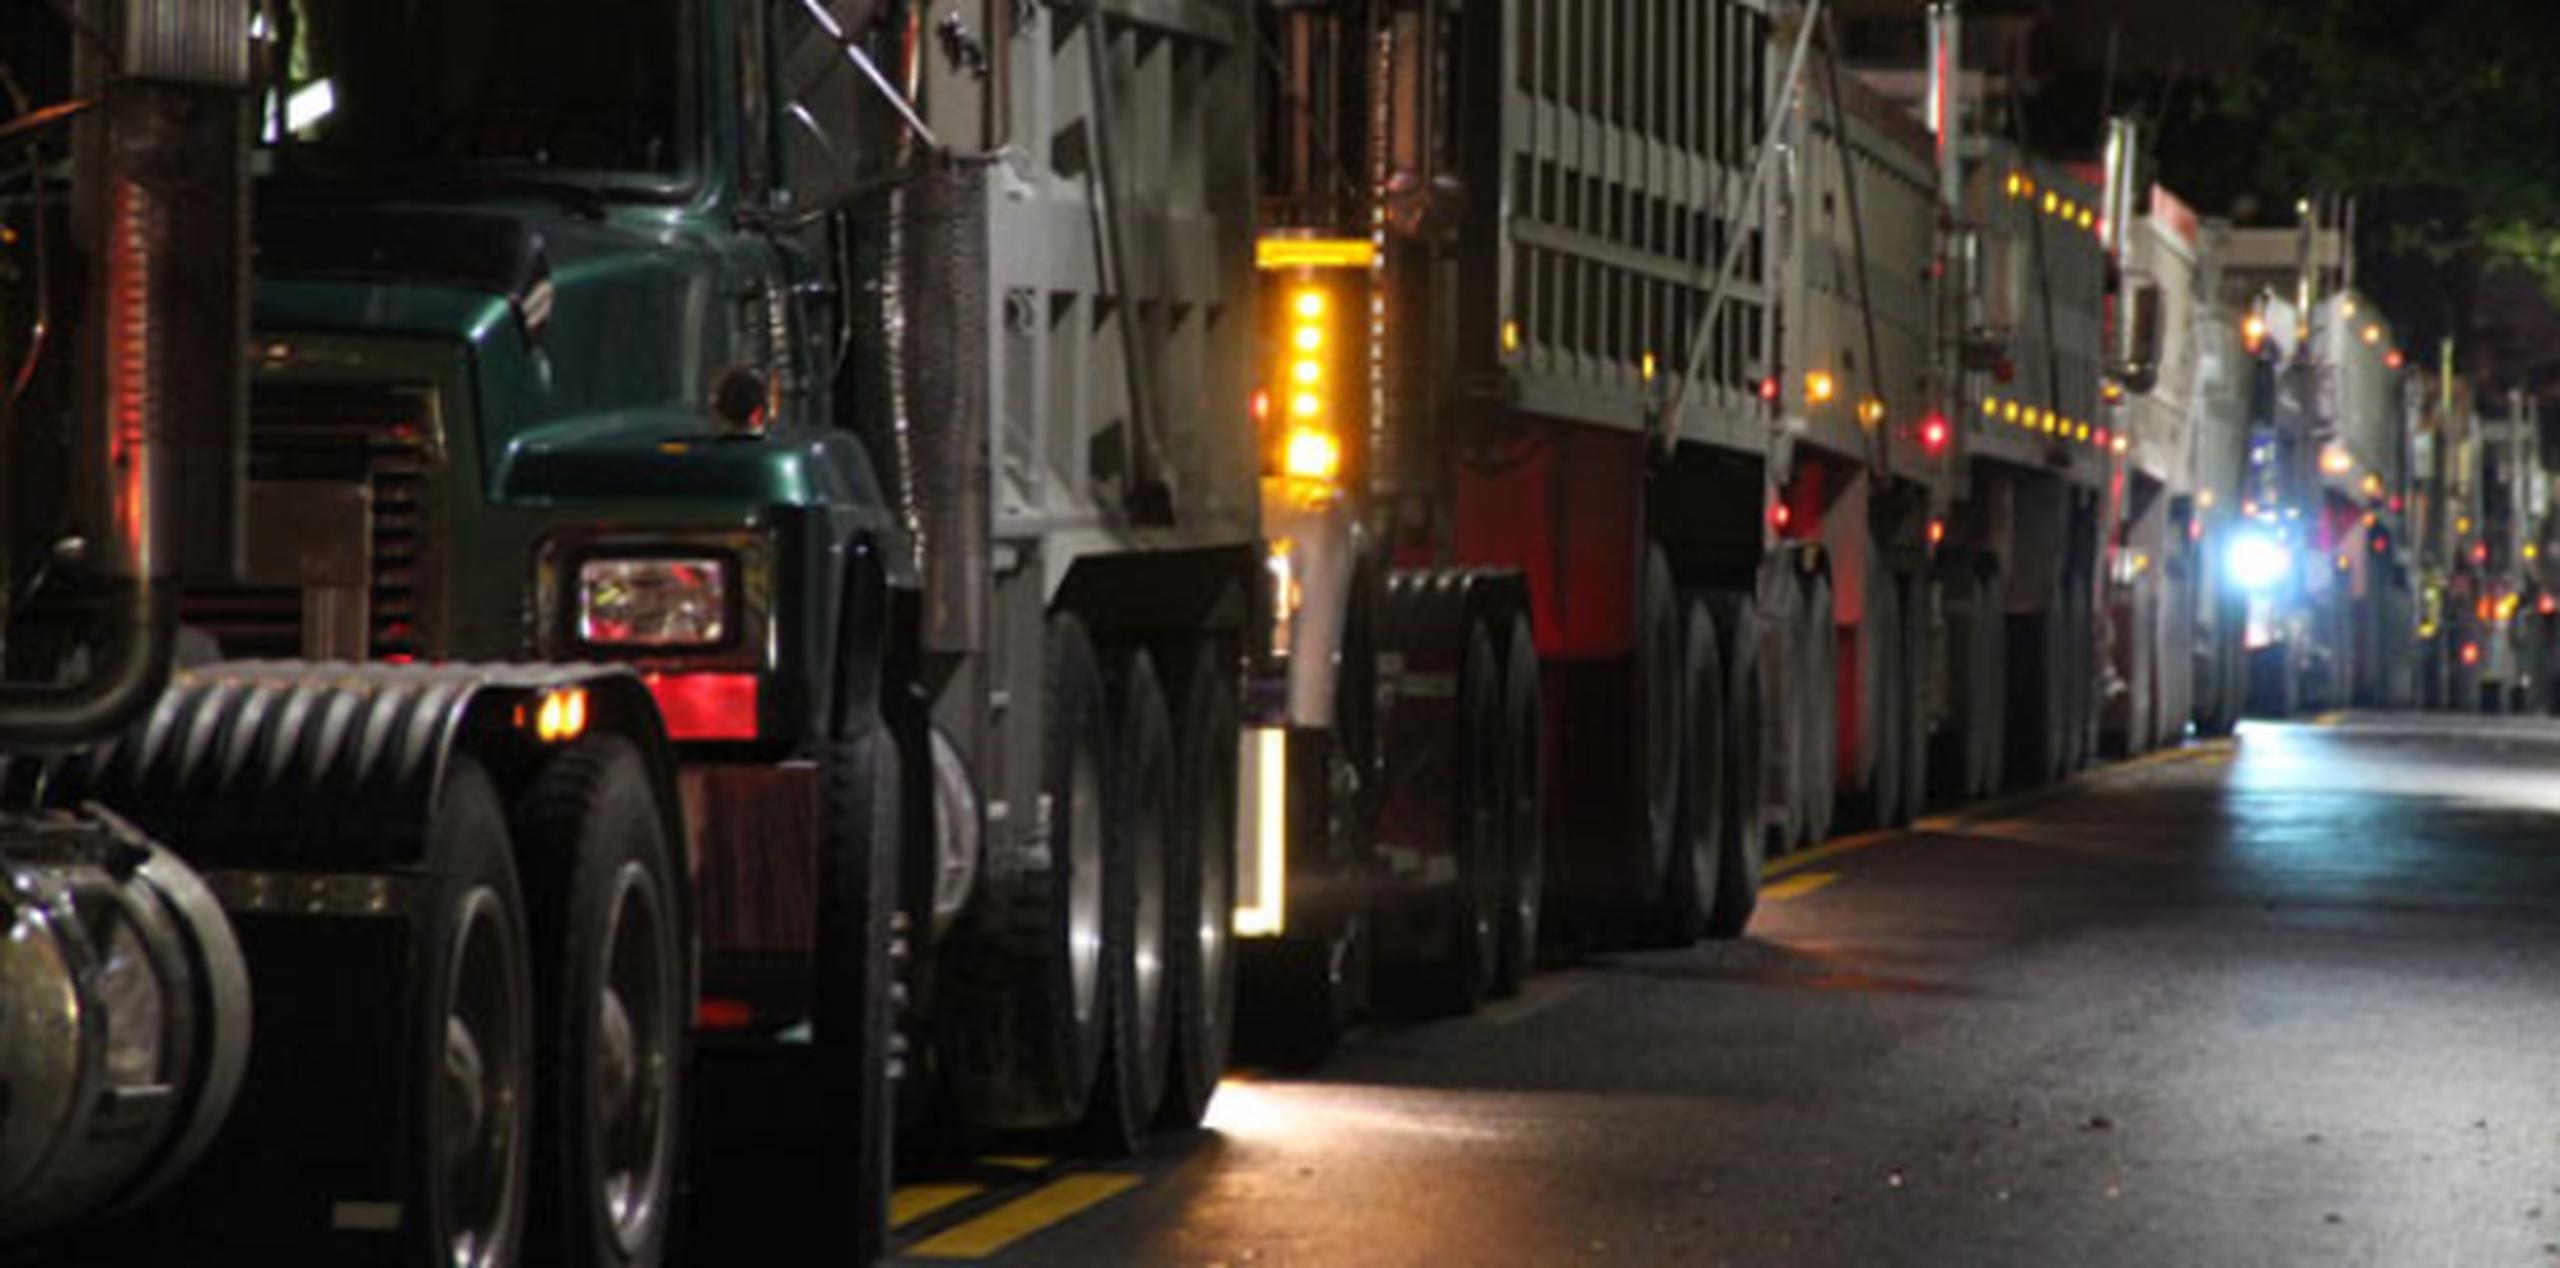 Se mantienen firmes en detener el acceso de camiones que transportan cenizas de carbón con la intención de depositarlas allí. (Archivo)